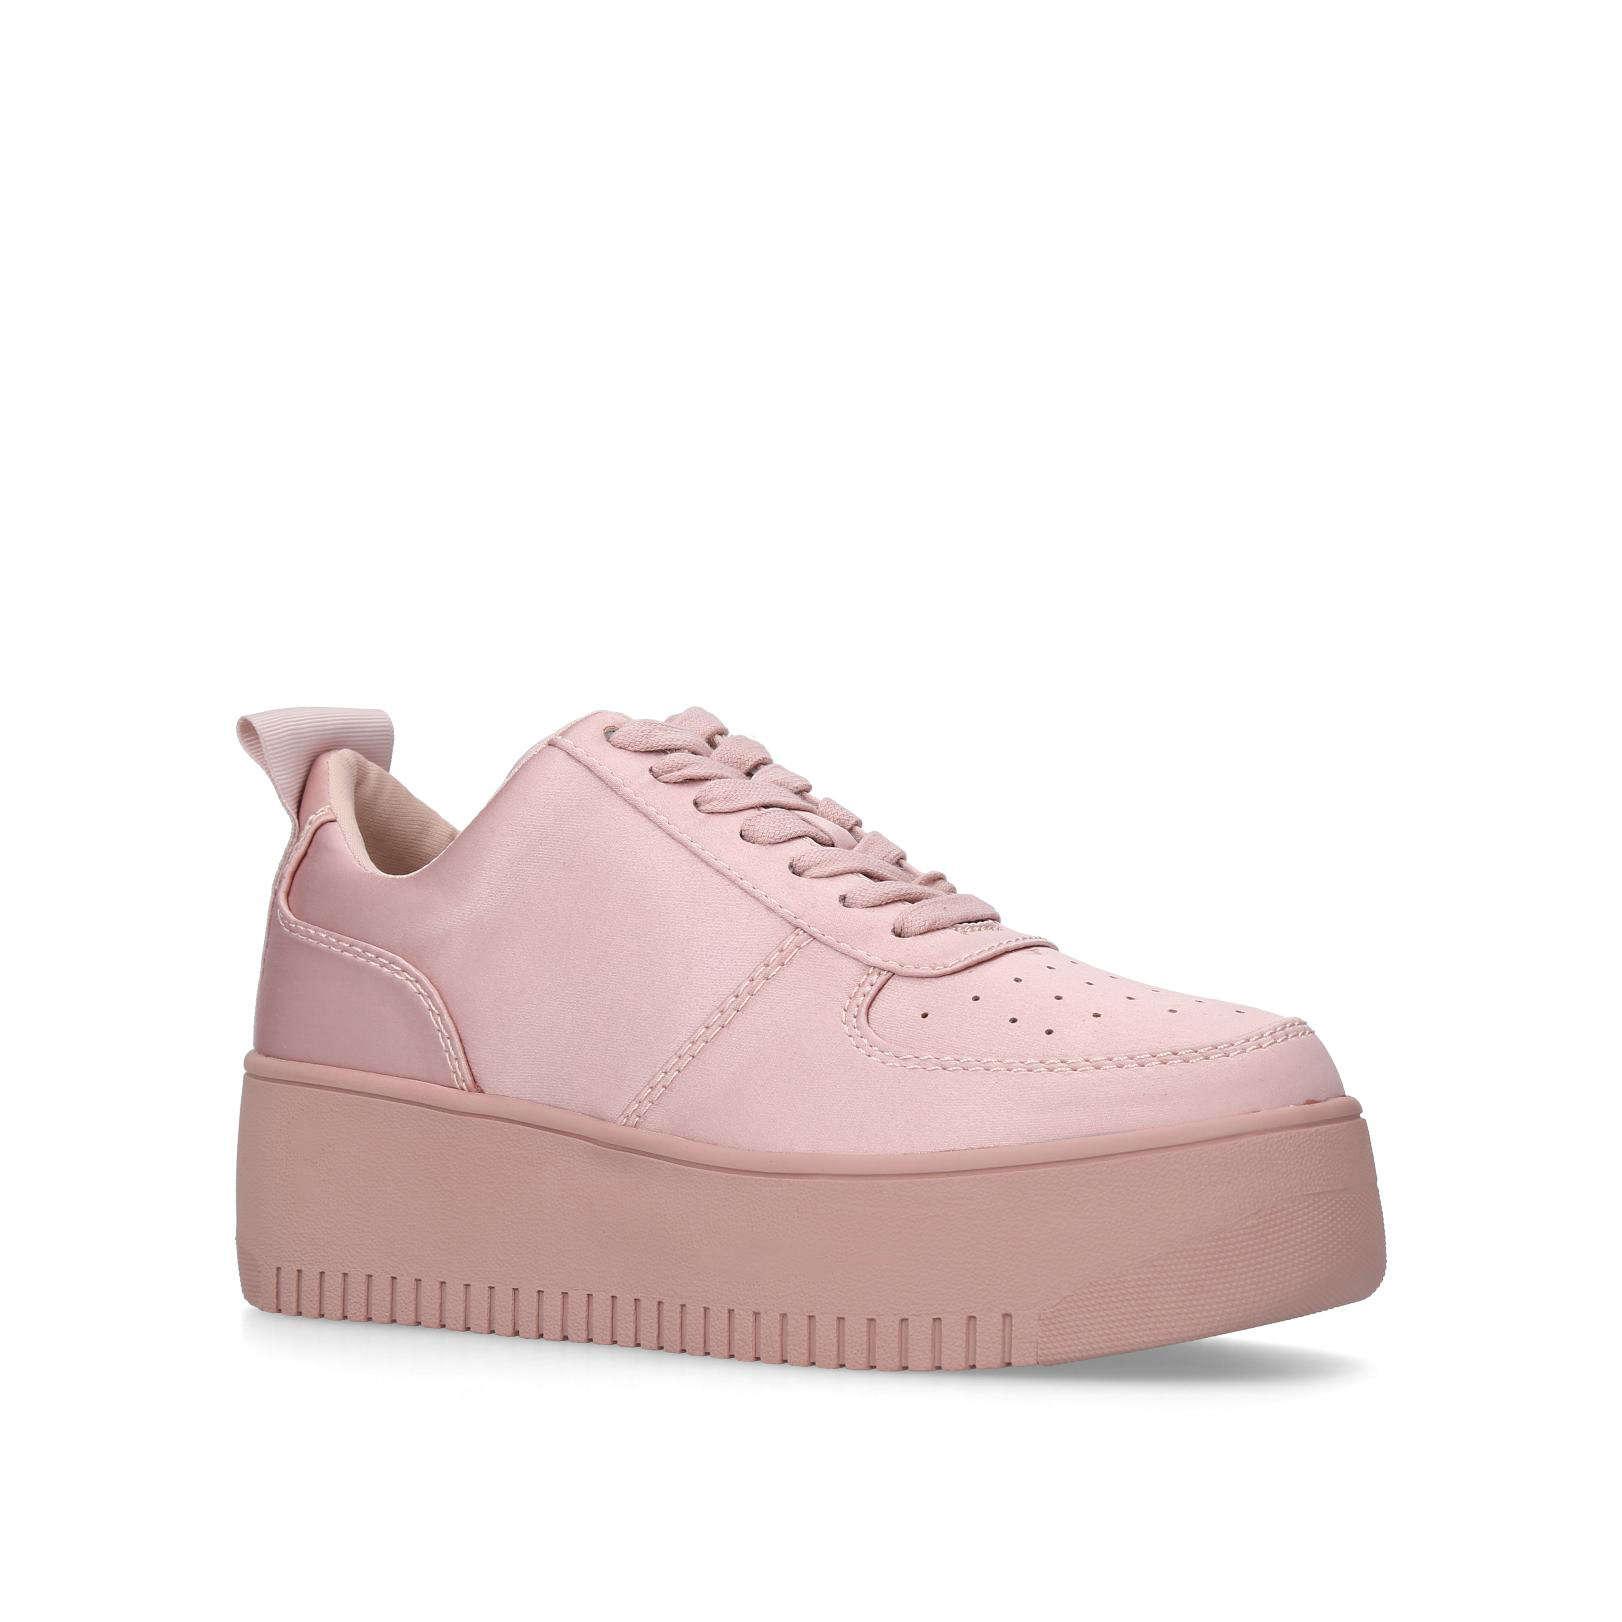 Satin Laura 40 Mm Heel Sneakers Pink 